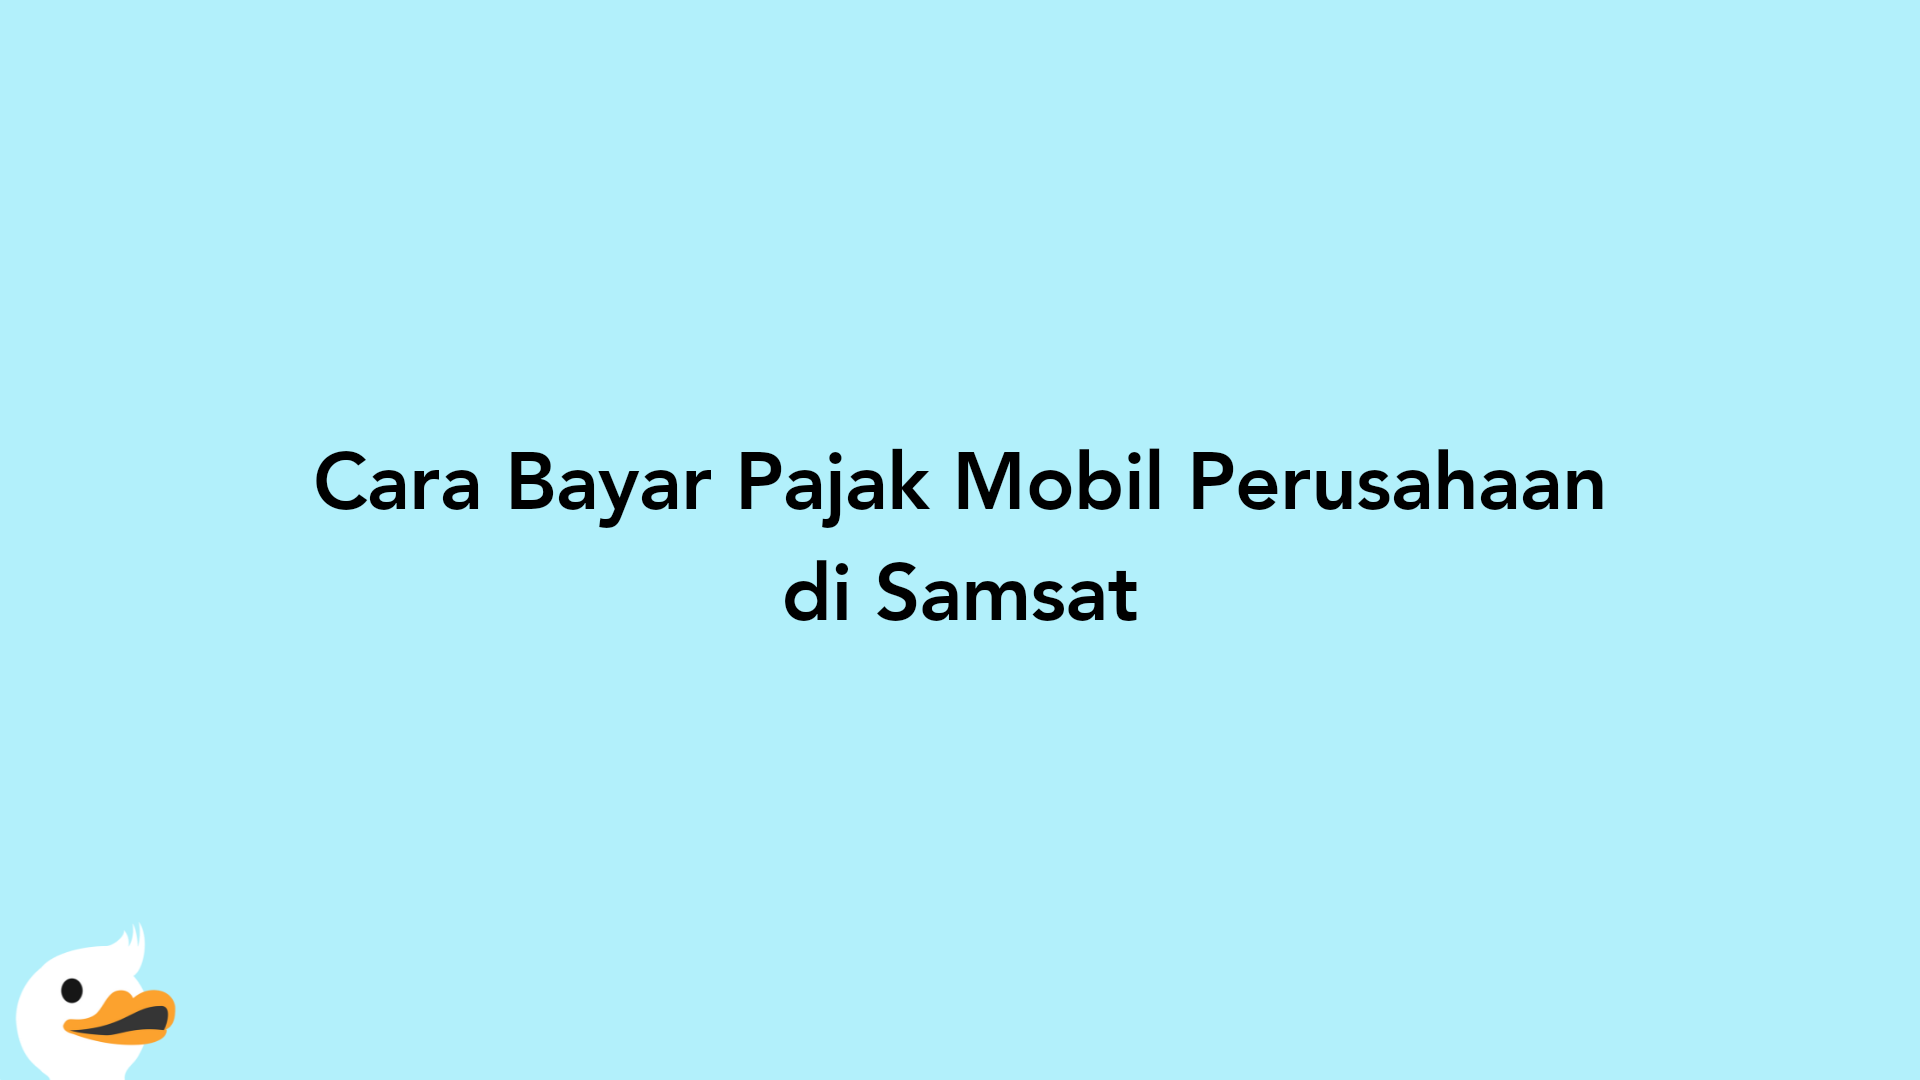 Cara Bayar Pajak Mobil Perusahaan di Samsat